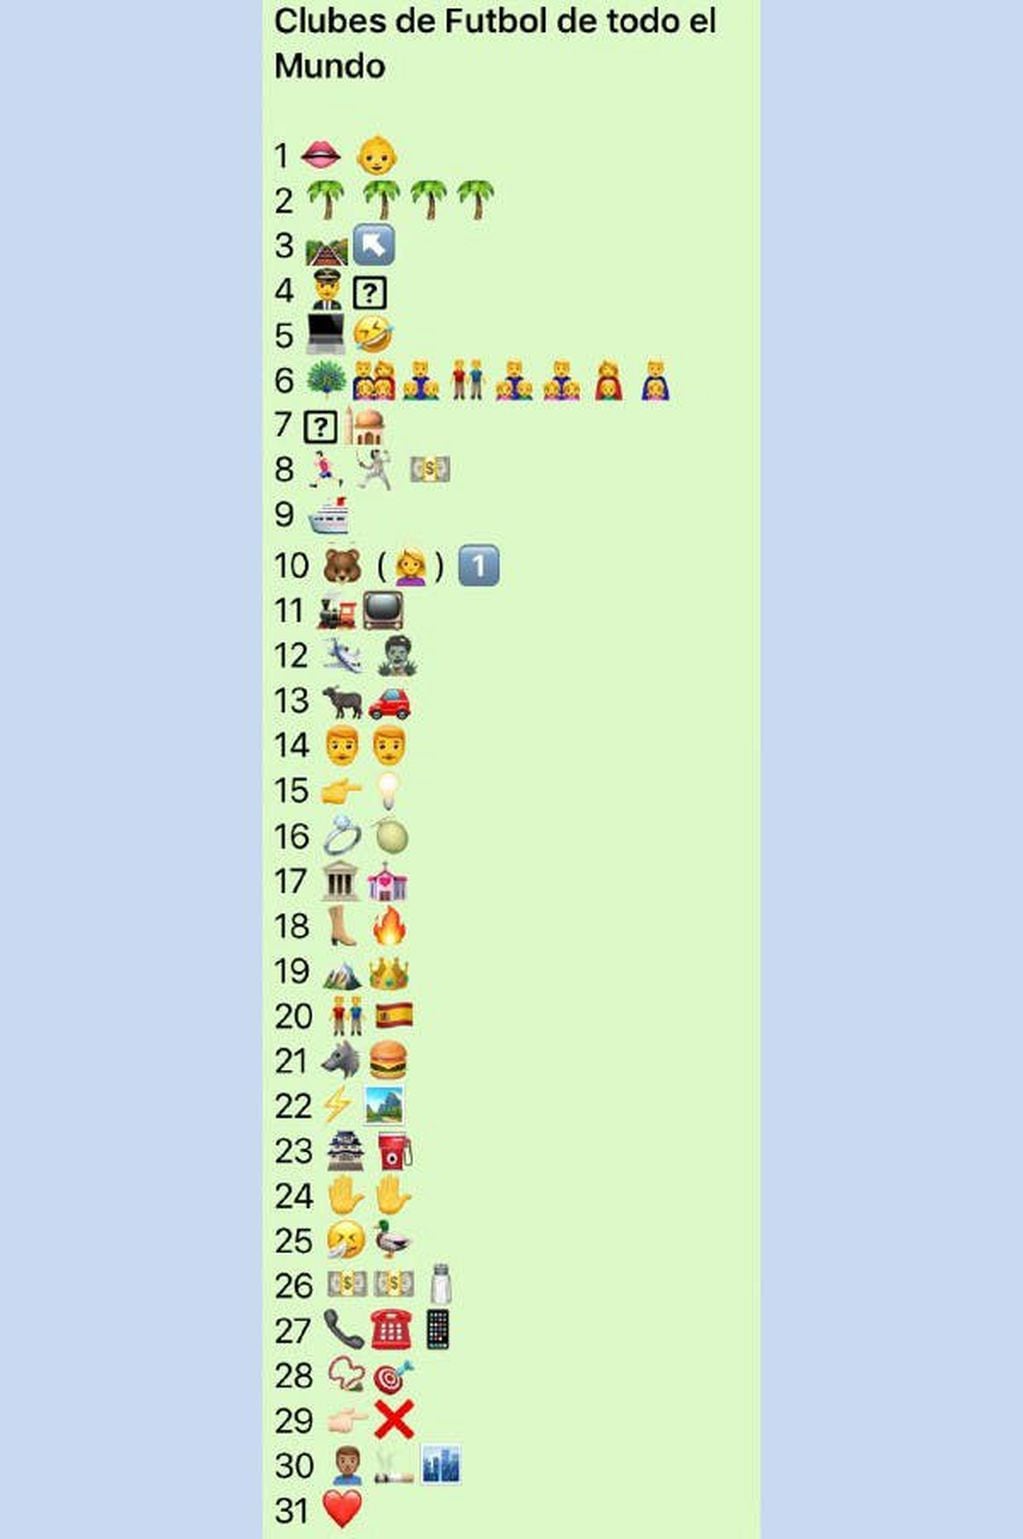 El juego consiste en adivinar los jugadores y clubes a los que hacen referencia los emojis.